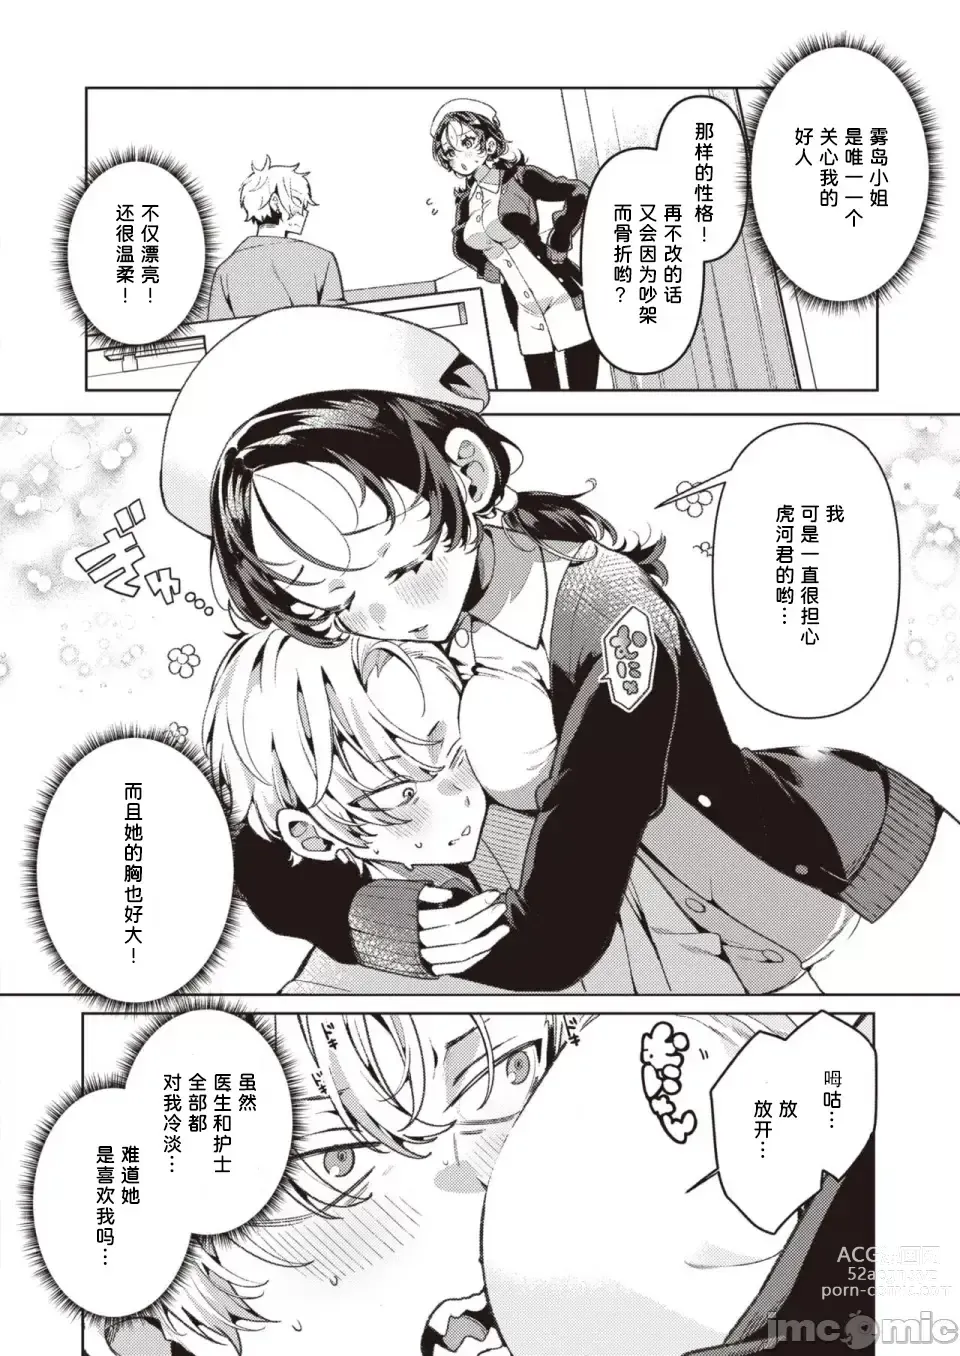 Page 4 of manga Yasashii? Nurse no Kirishima-san